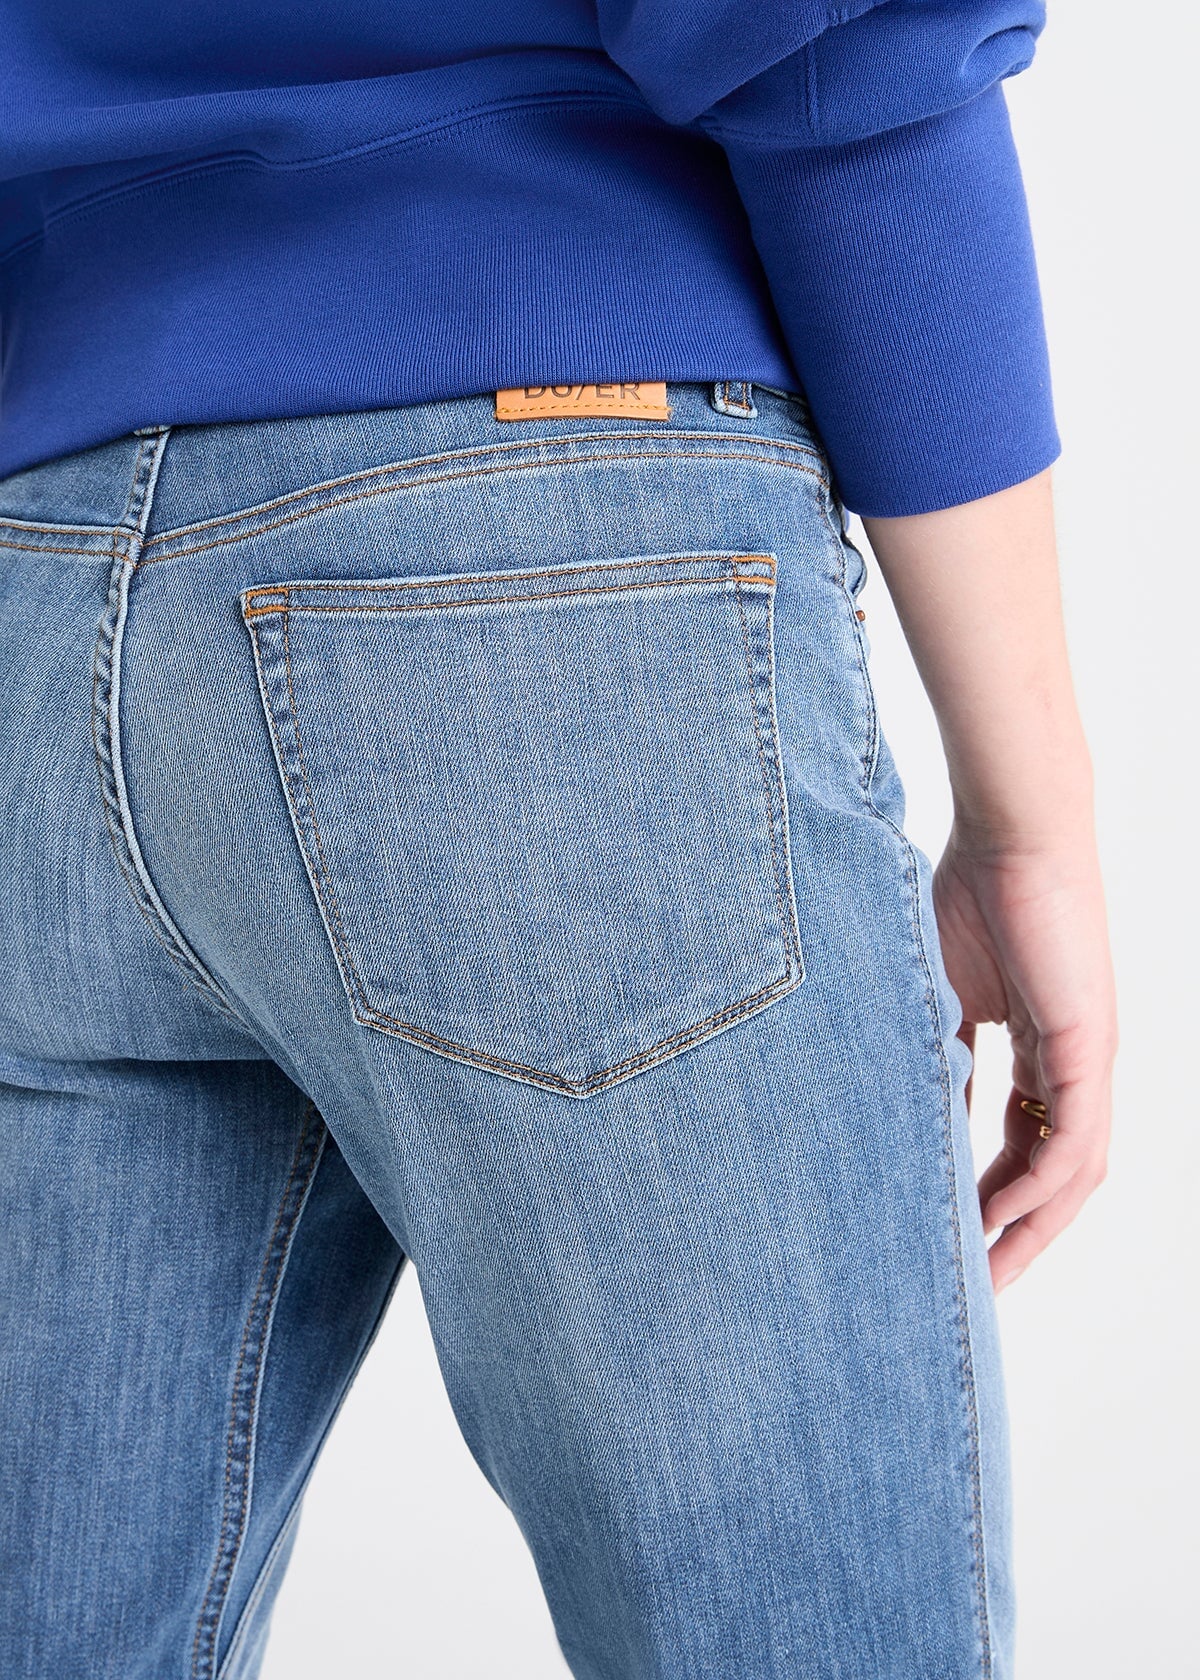 udslettelse skrige Fremmedgørelse Women's Relaxed Fit Stone Wash Stretch Jeans – DUER